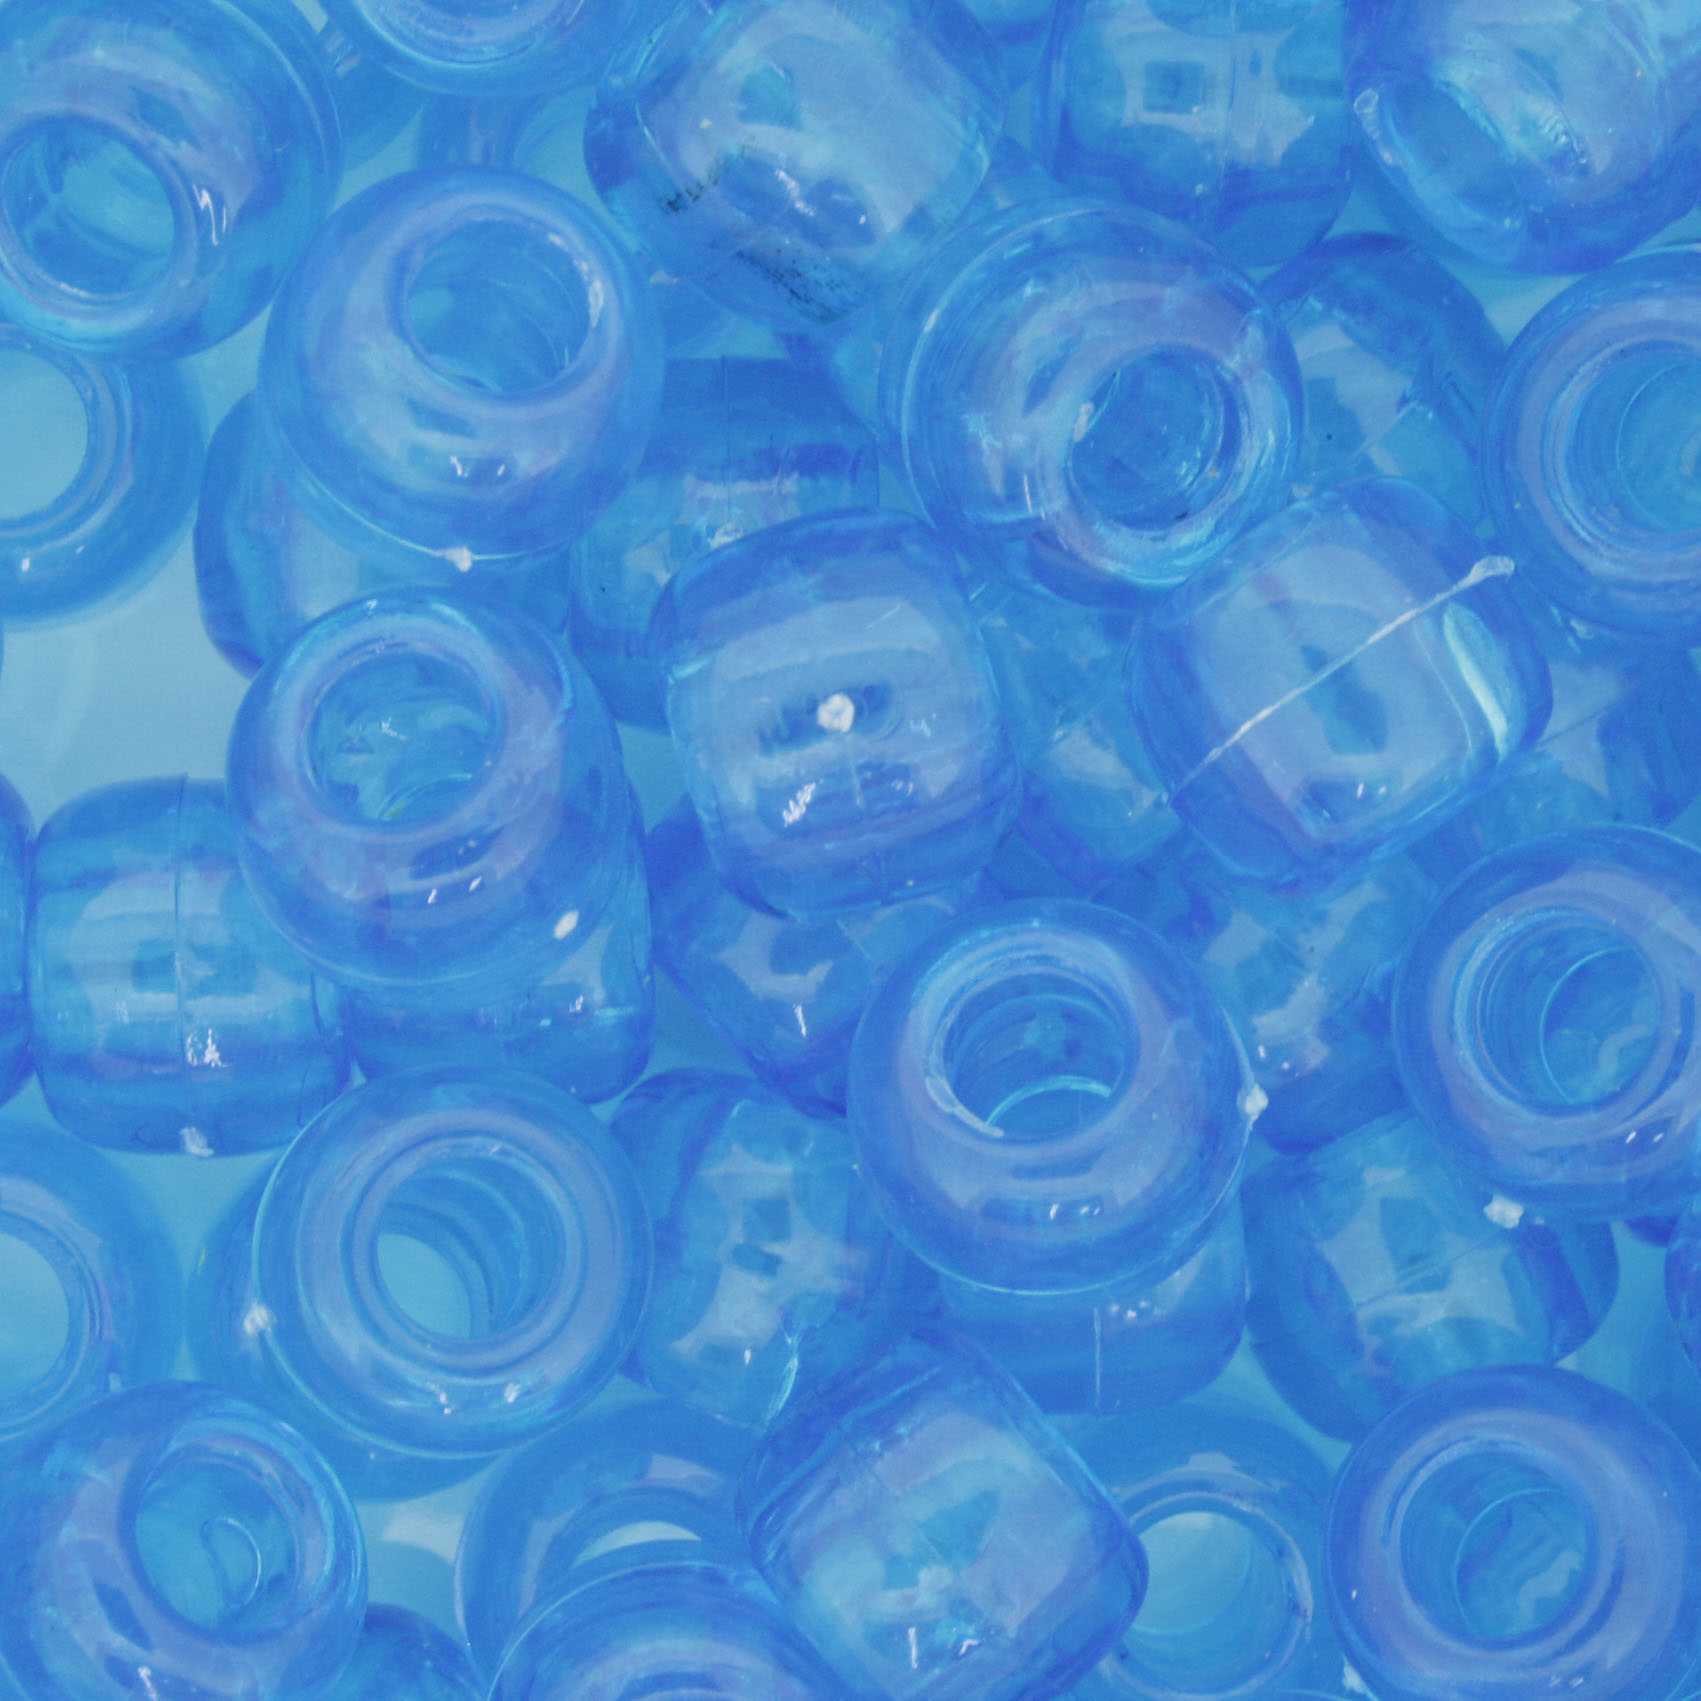 Miçangão Plástico - Tererê® - Azul Claro Transparente  - Stéphanie Bijoux® - Peças para Bijuterias e Artesanato